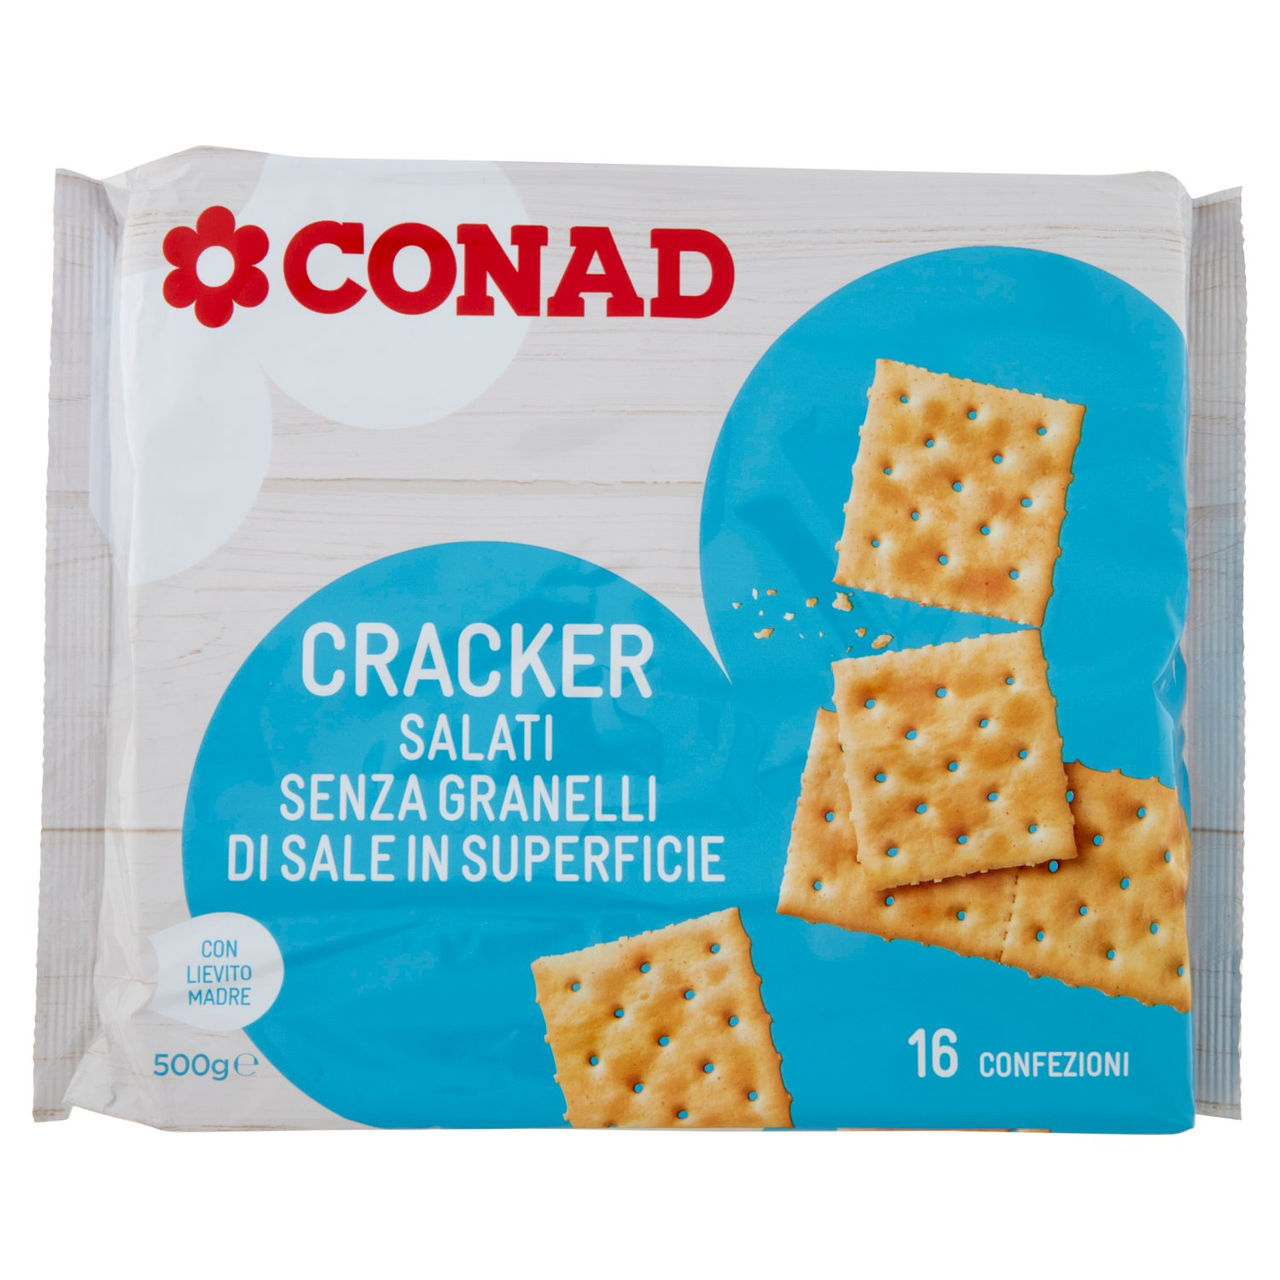 Cracker Salati Senza Granelli di Sale Conad online